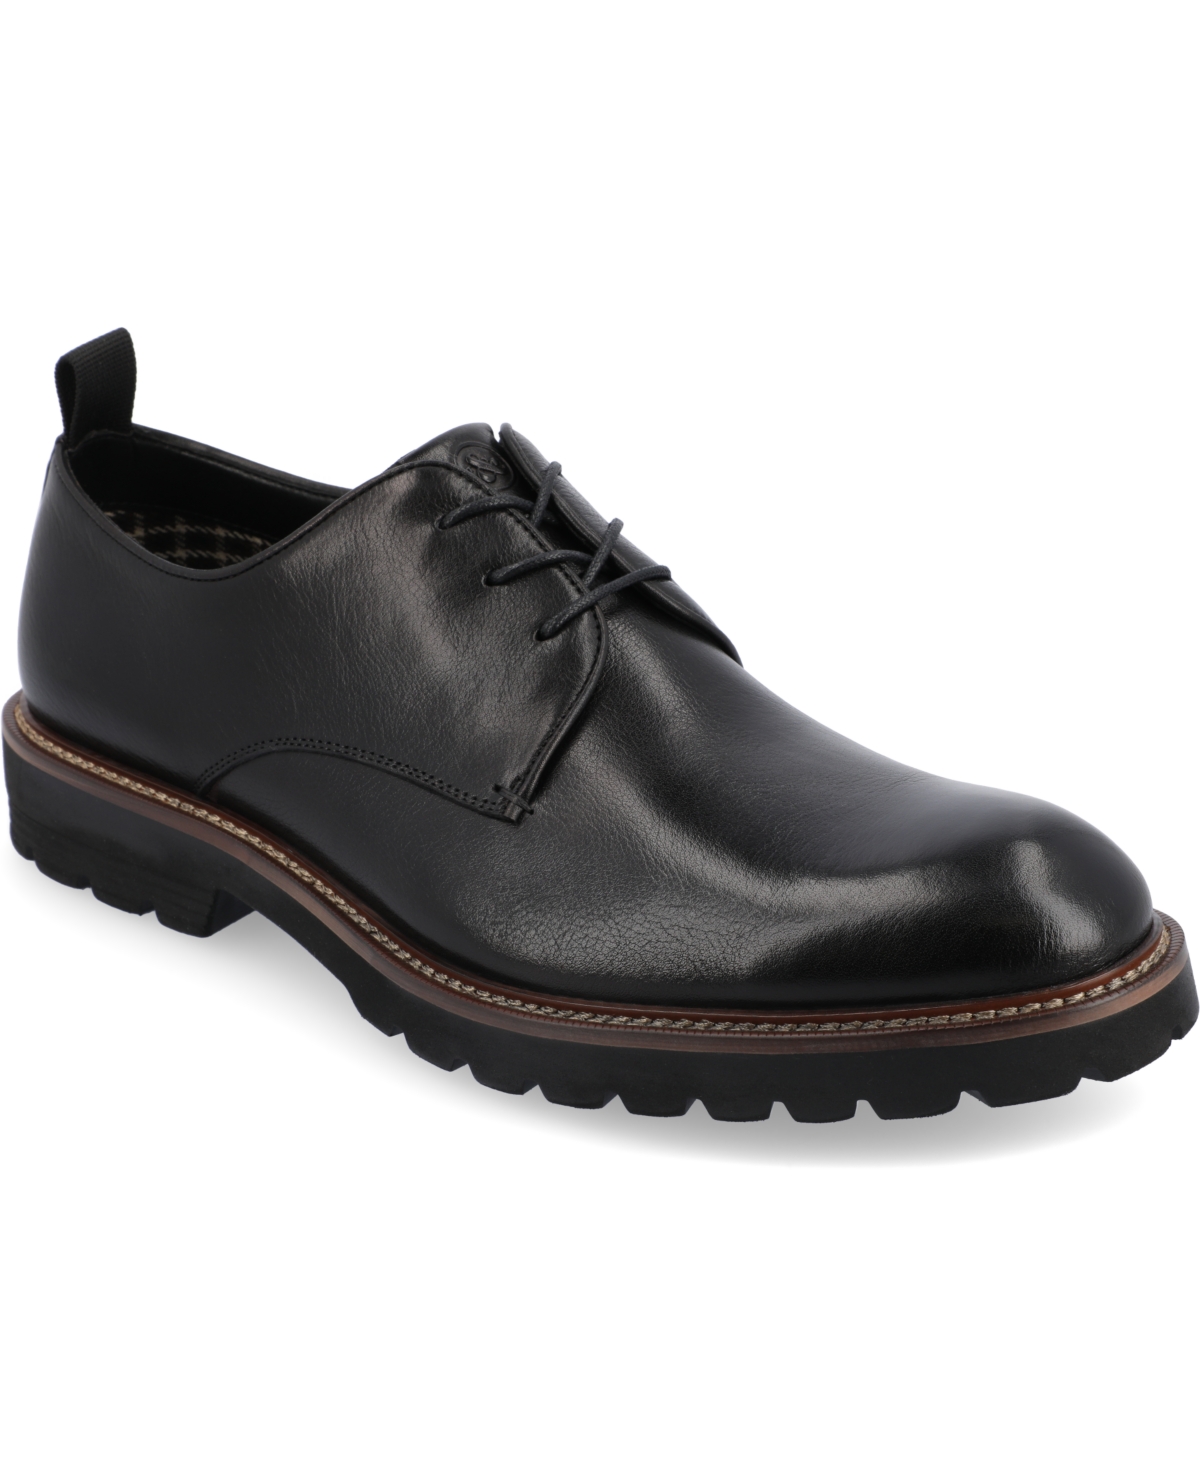 Men's Davies Tru Comfort Foam Plain Toe Lace-up Derby Shoes - Brown